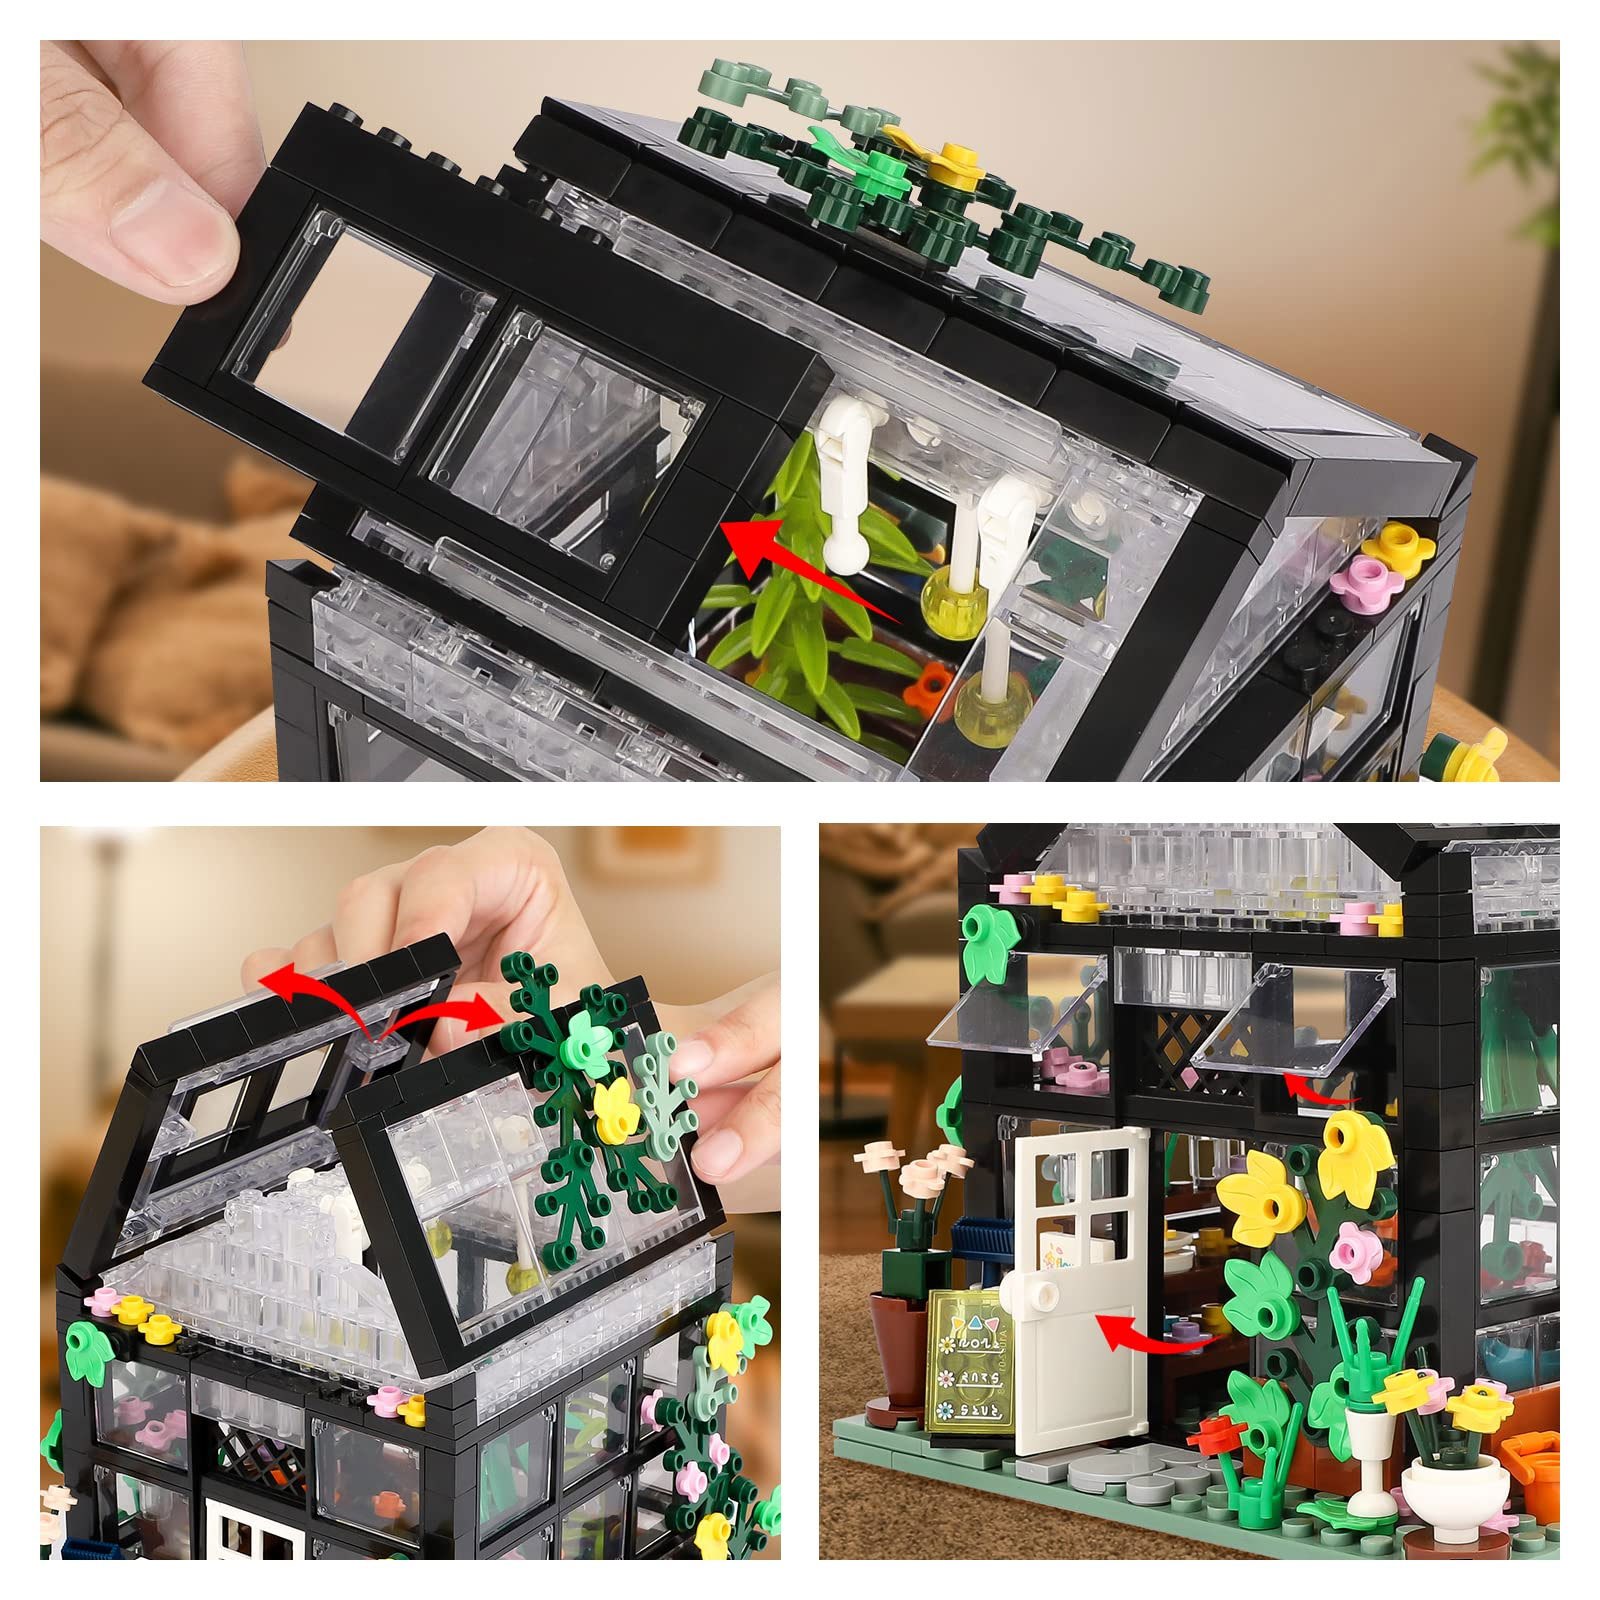 レゴと互換性のあるフラワーハウス組み立てセット、フラワーフレンズ